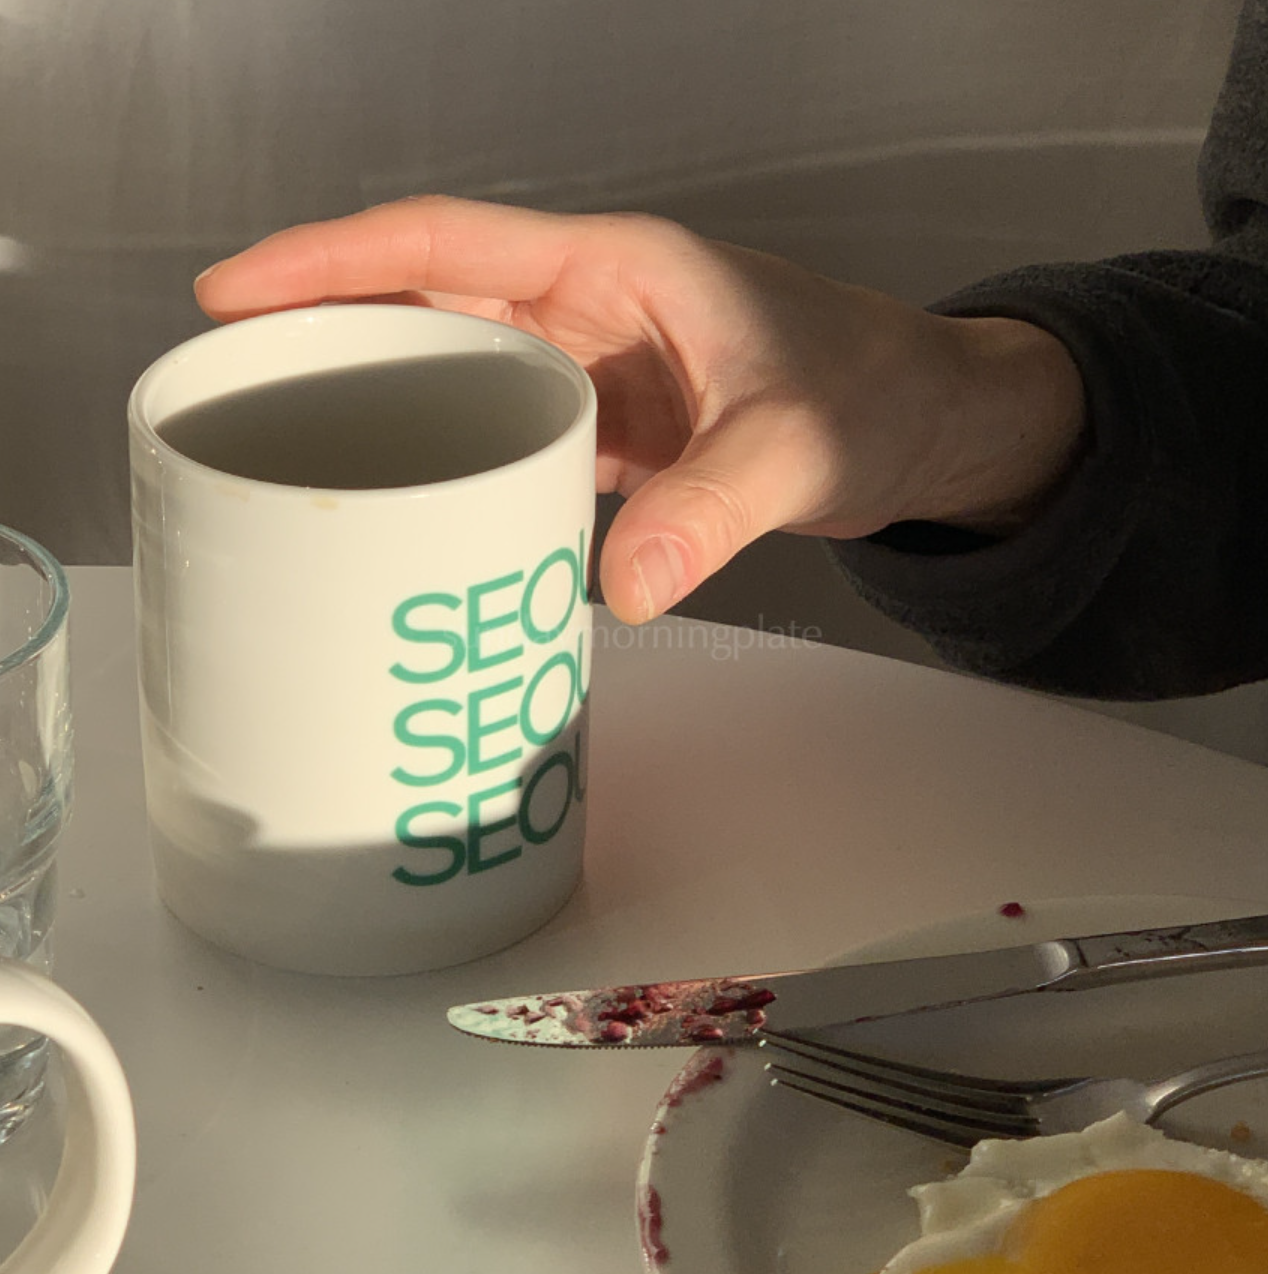 [sunday morning plate] City mug 11oz - SEOUL